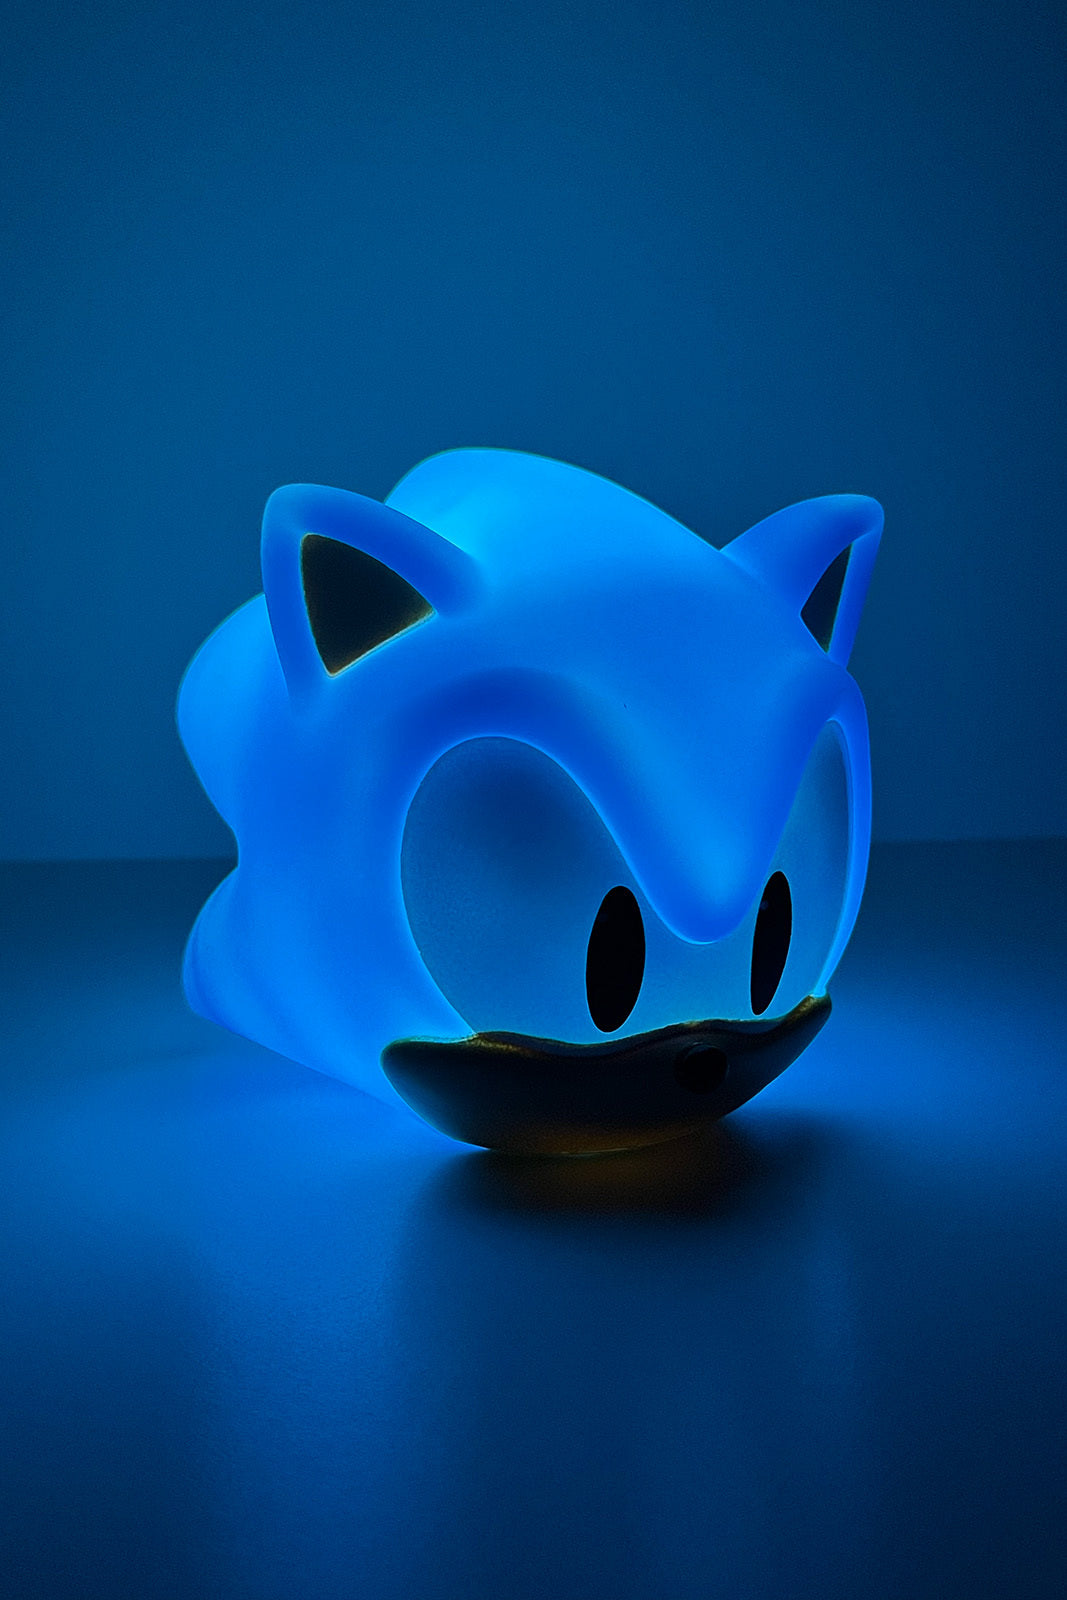 Sonic - Tischlampe